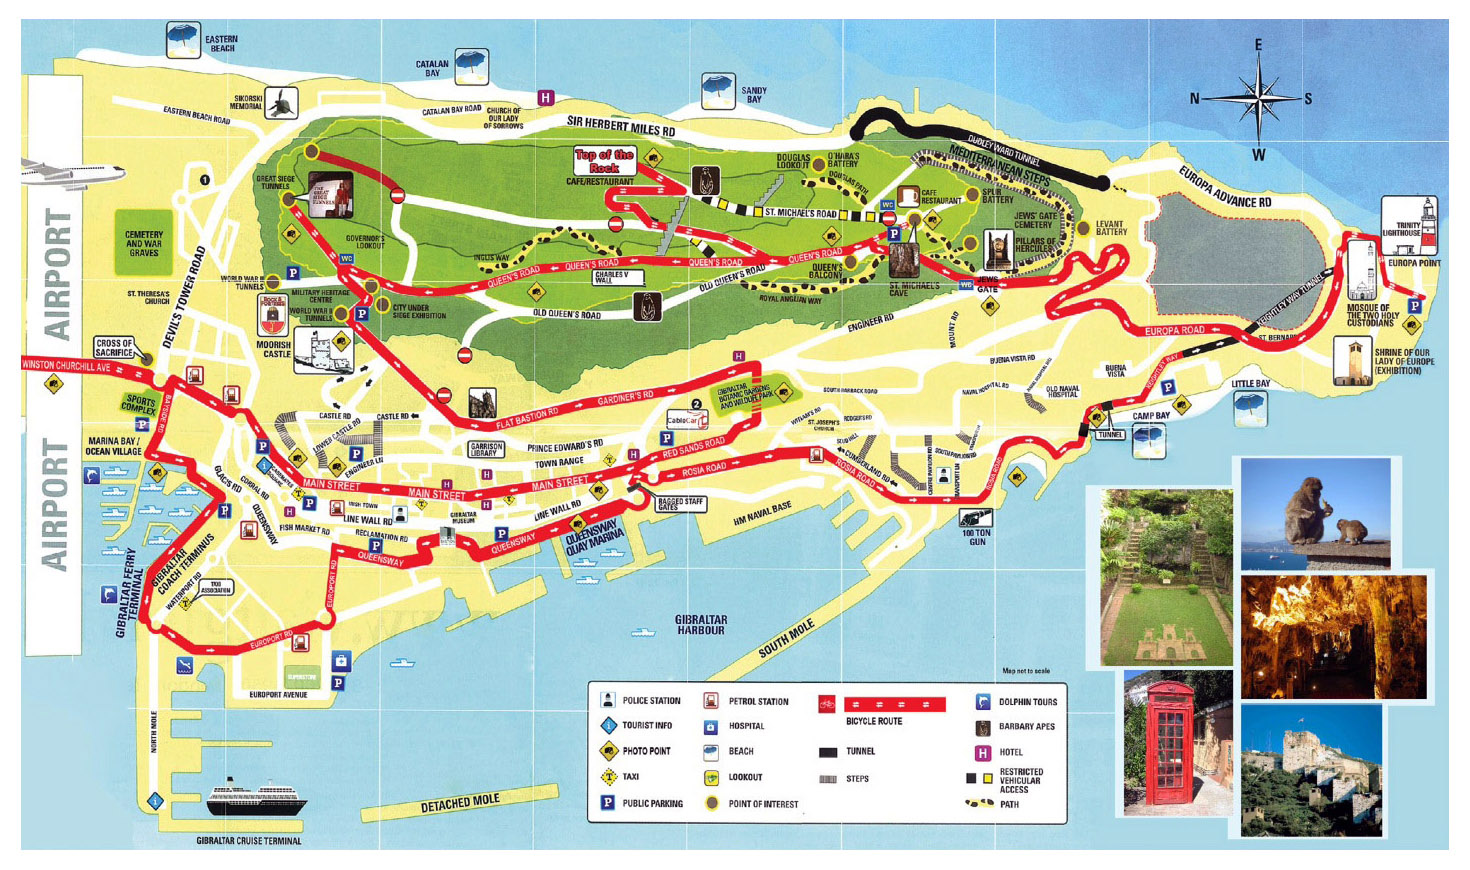 gibraltar tourist information centre